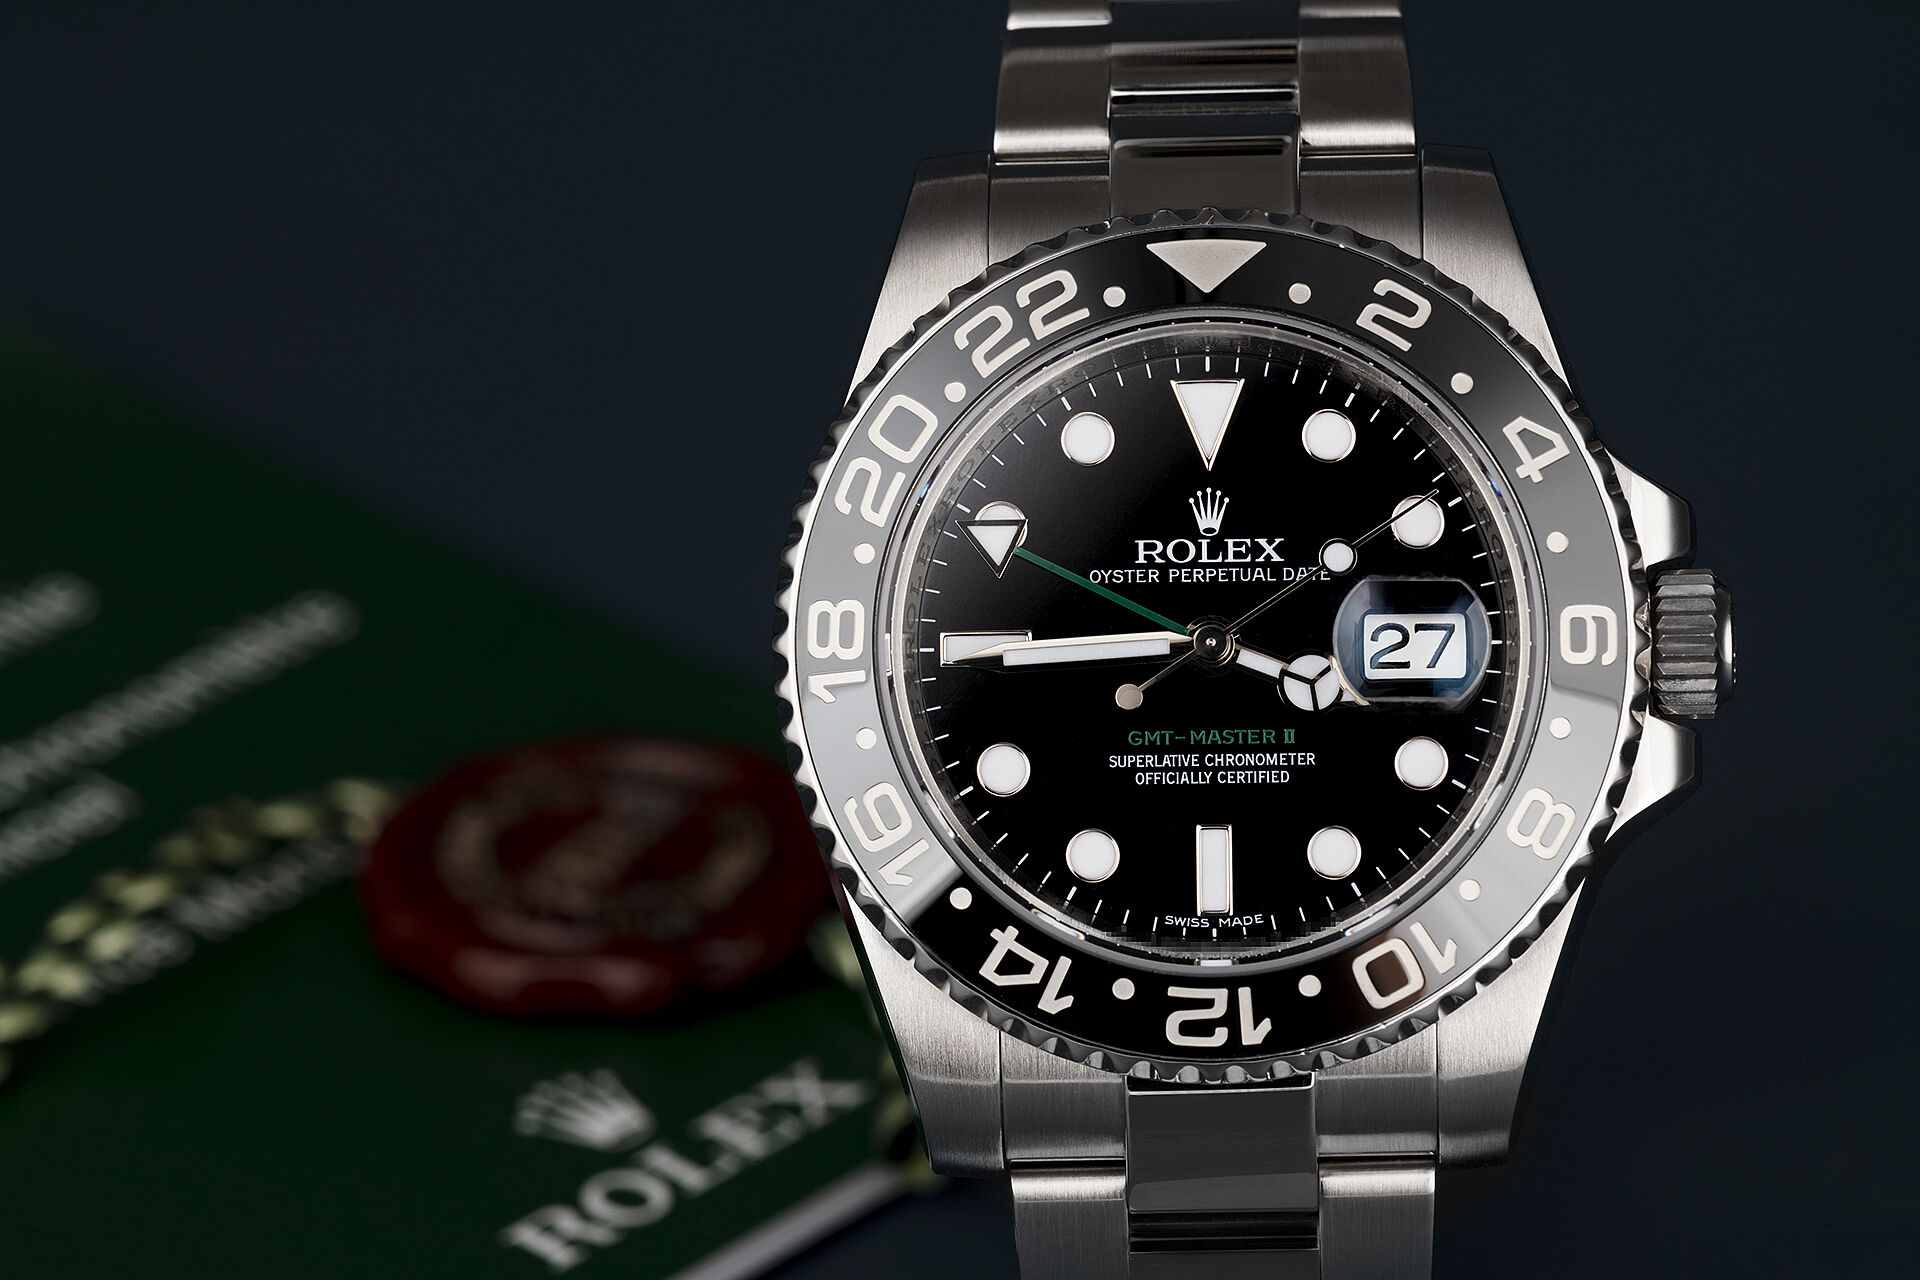 ref 116710LN | UK Retailed | Rolex GMT-Master II